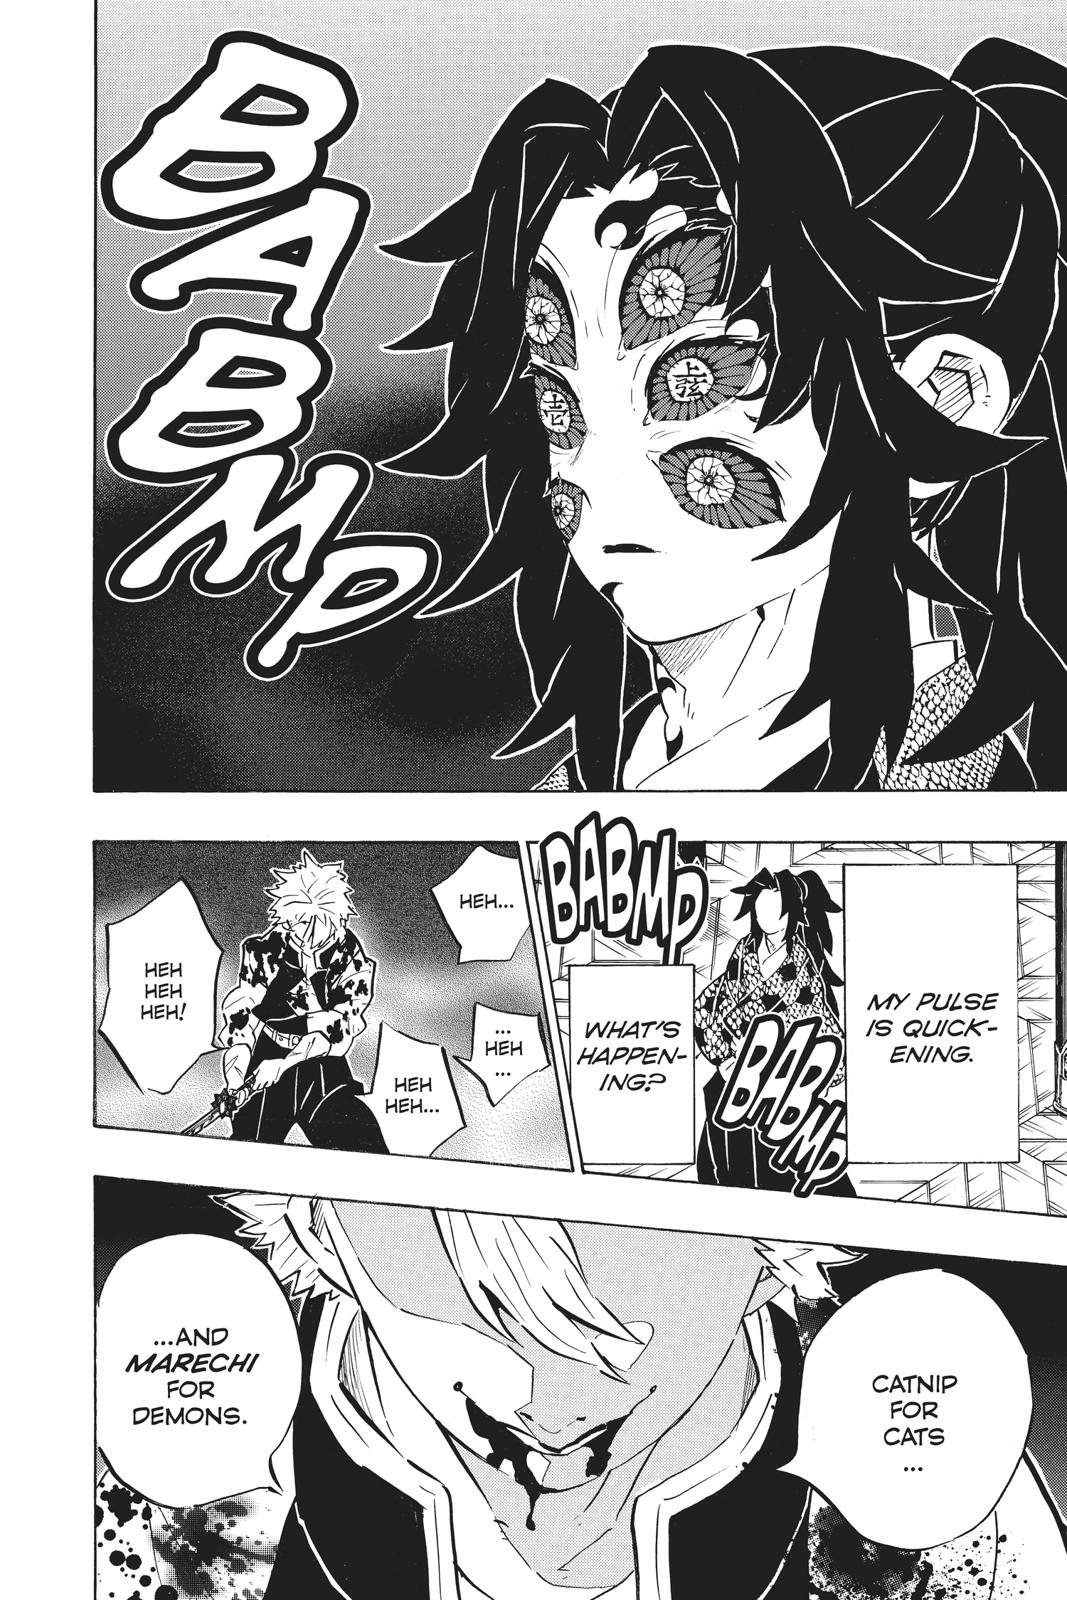 Demon Slayer Manga Manga Chapter - 167 - image 16